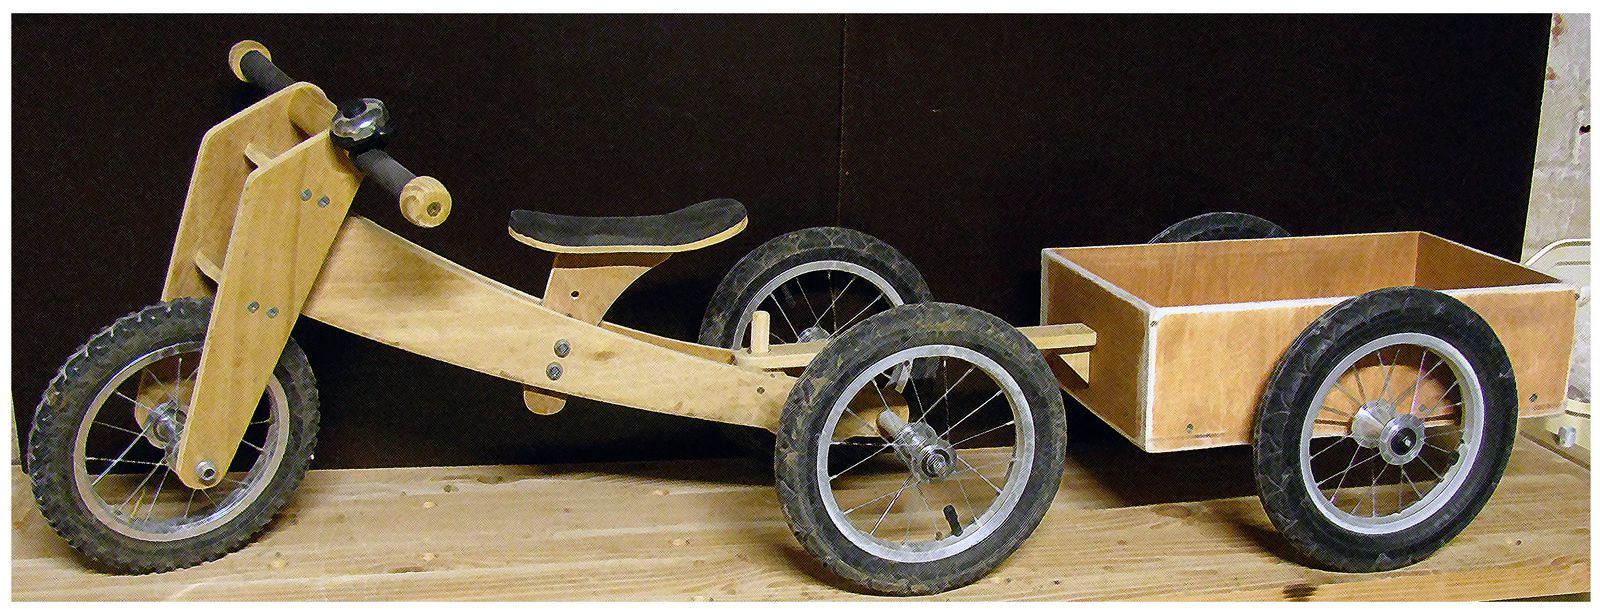 Fabriquer une remorque pour tricycle - Bon sang de bois !